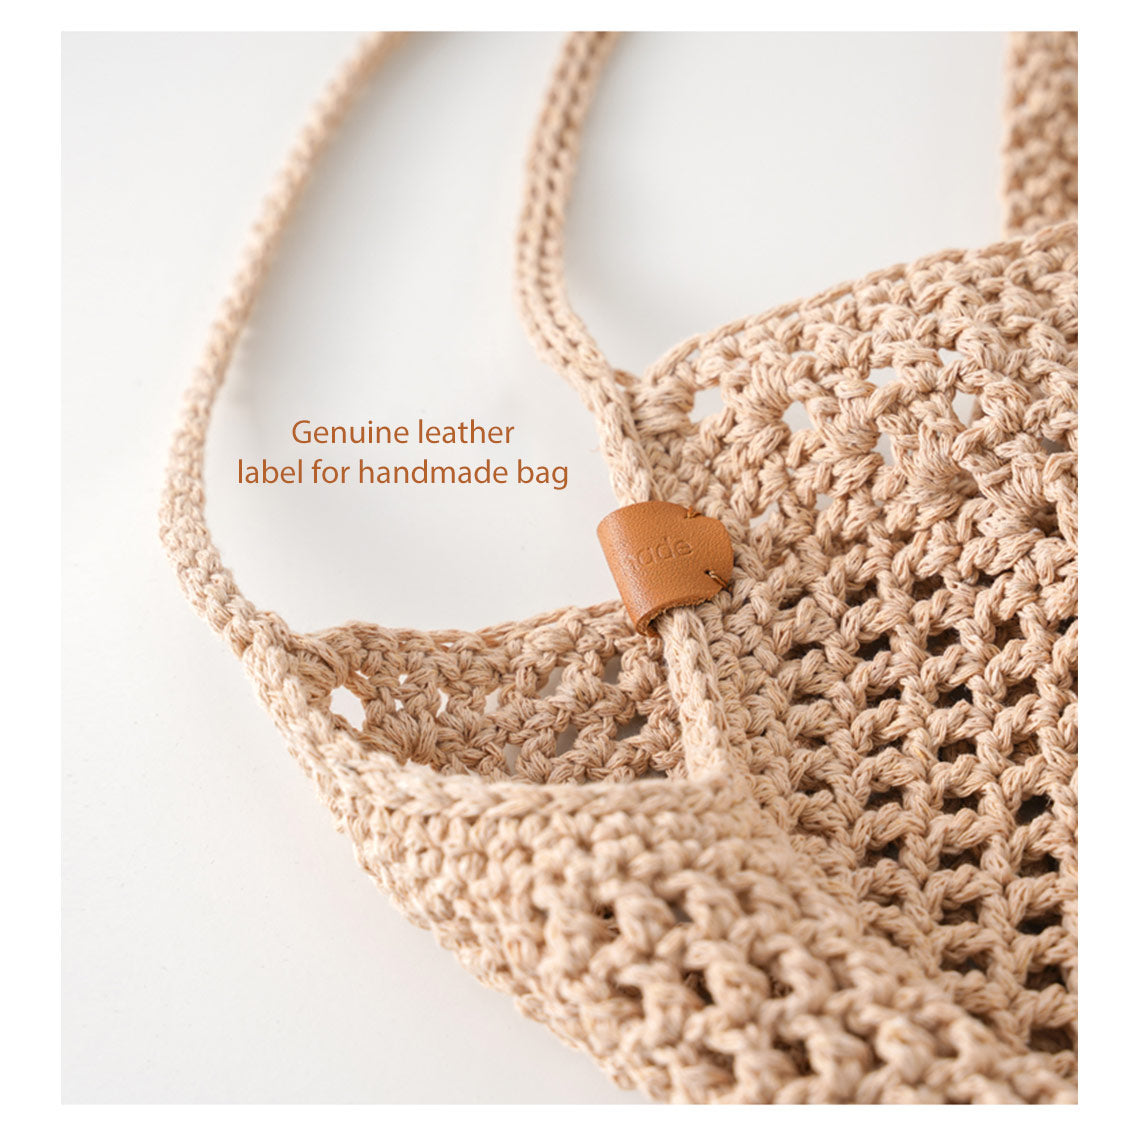 POPSEWING® Crochet Beach Handbag DIY Kit